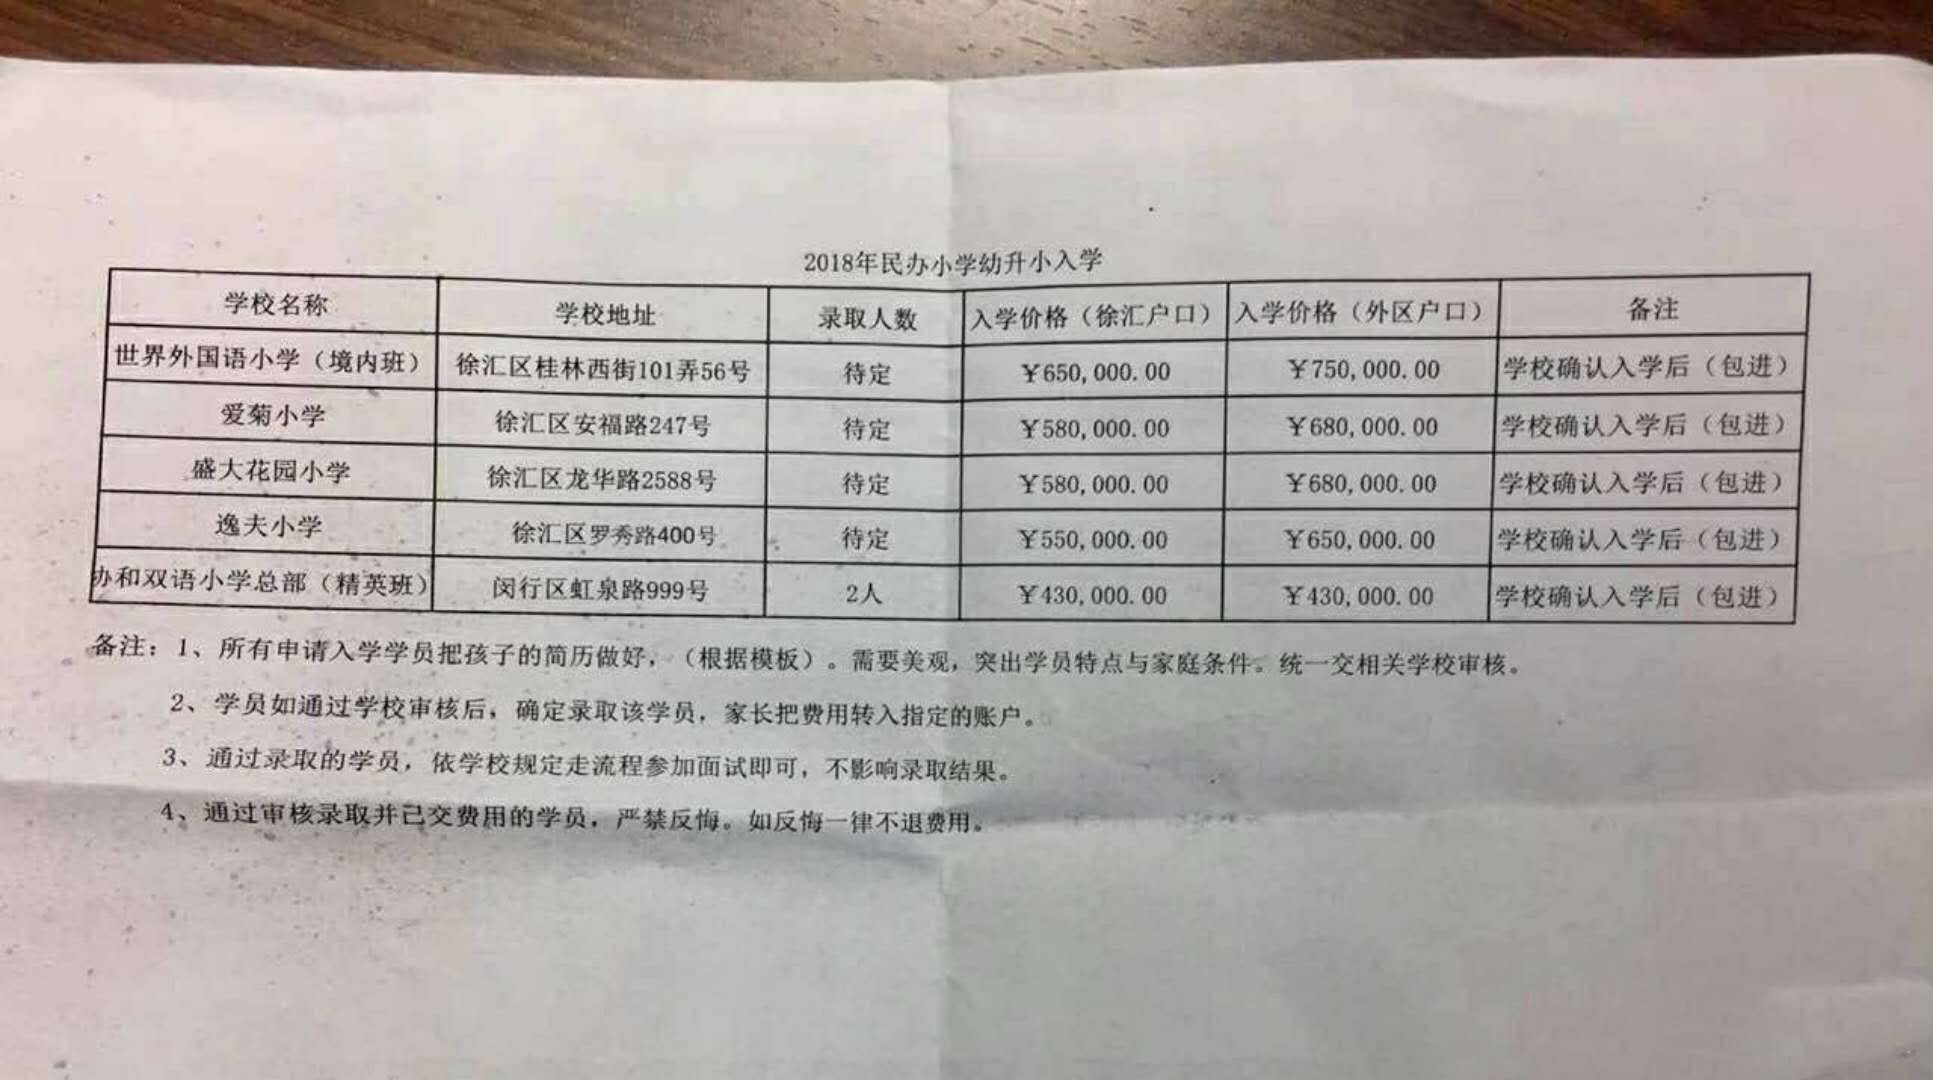 上海外国语小学入学费高达75万元  屏蔽言论在行动